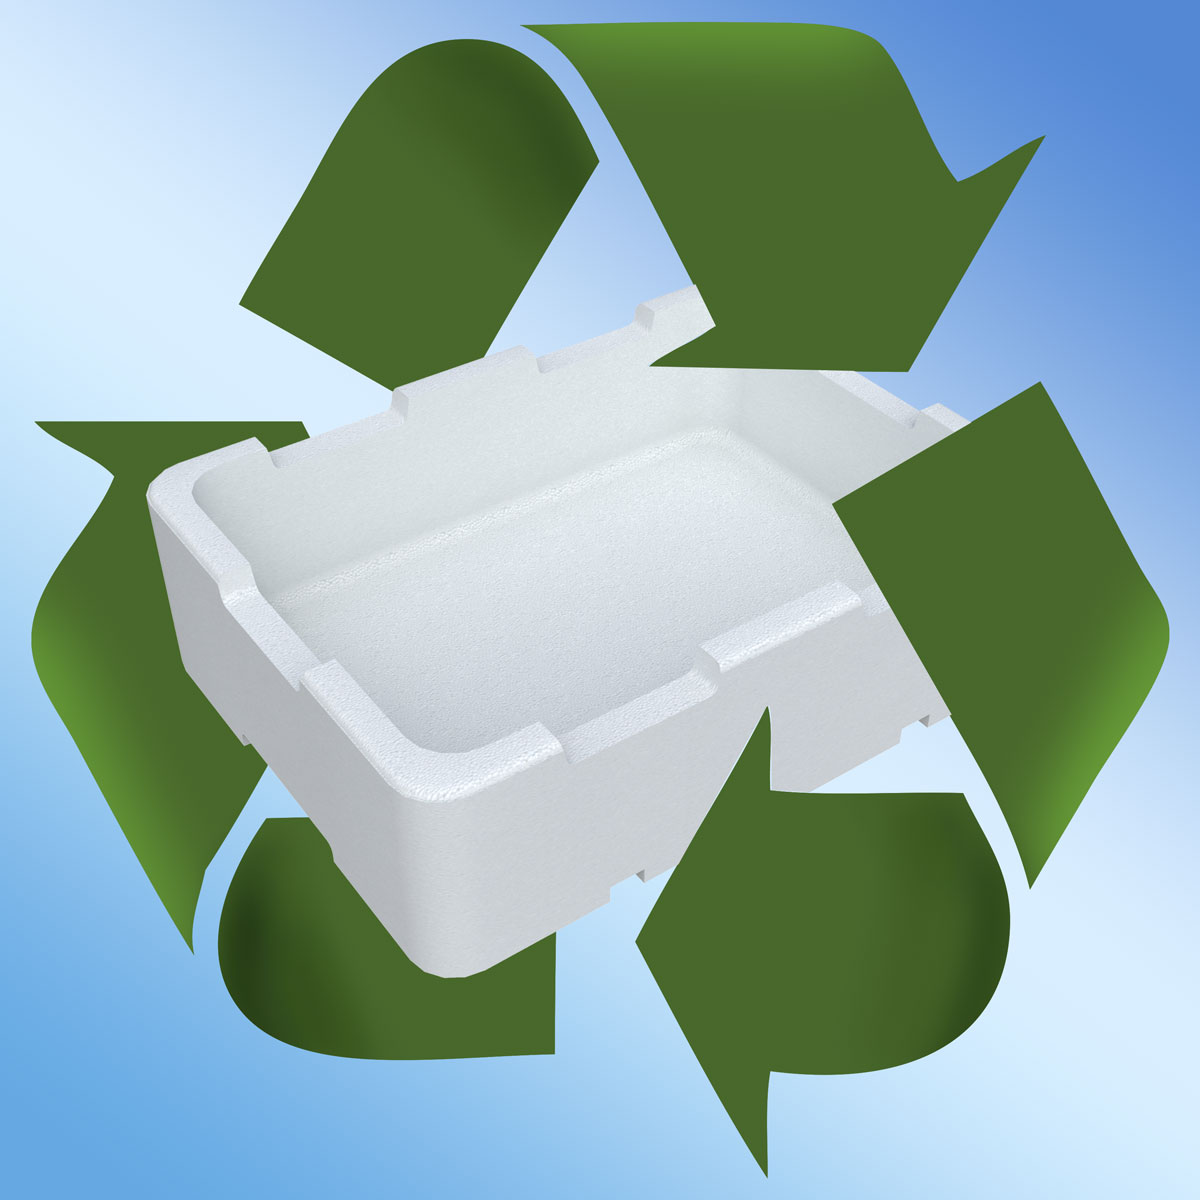 Materiales reciclados para envases y embalajes